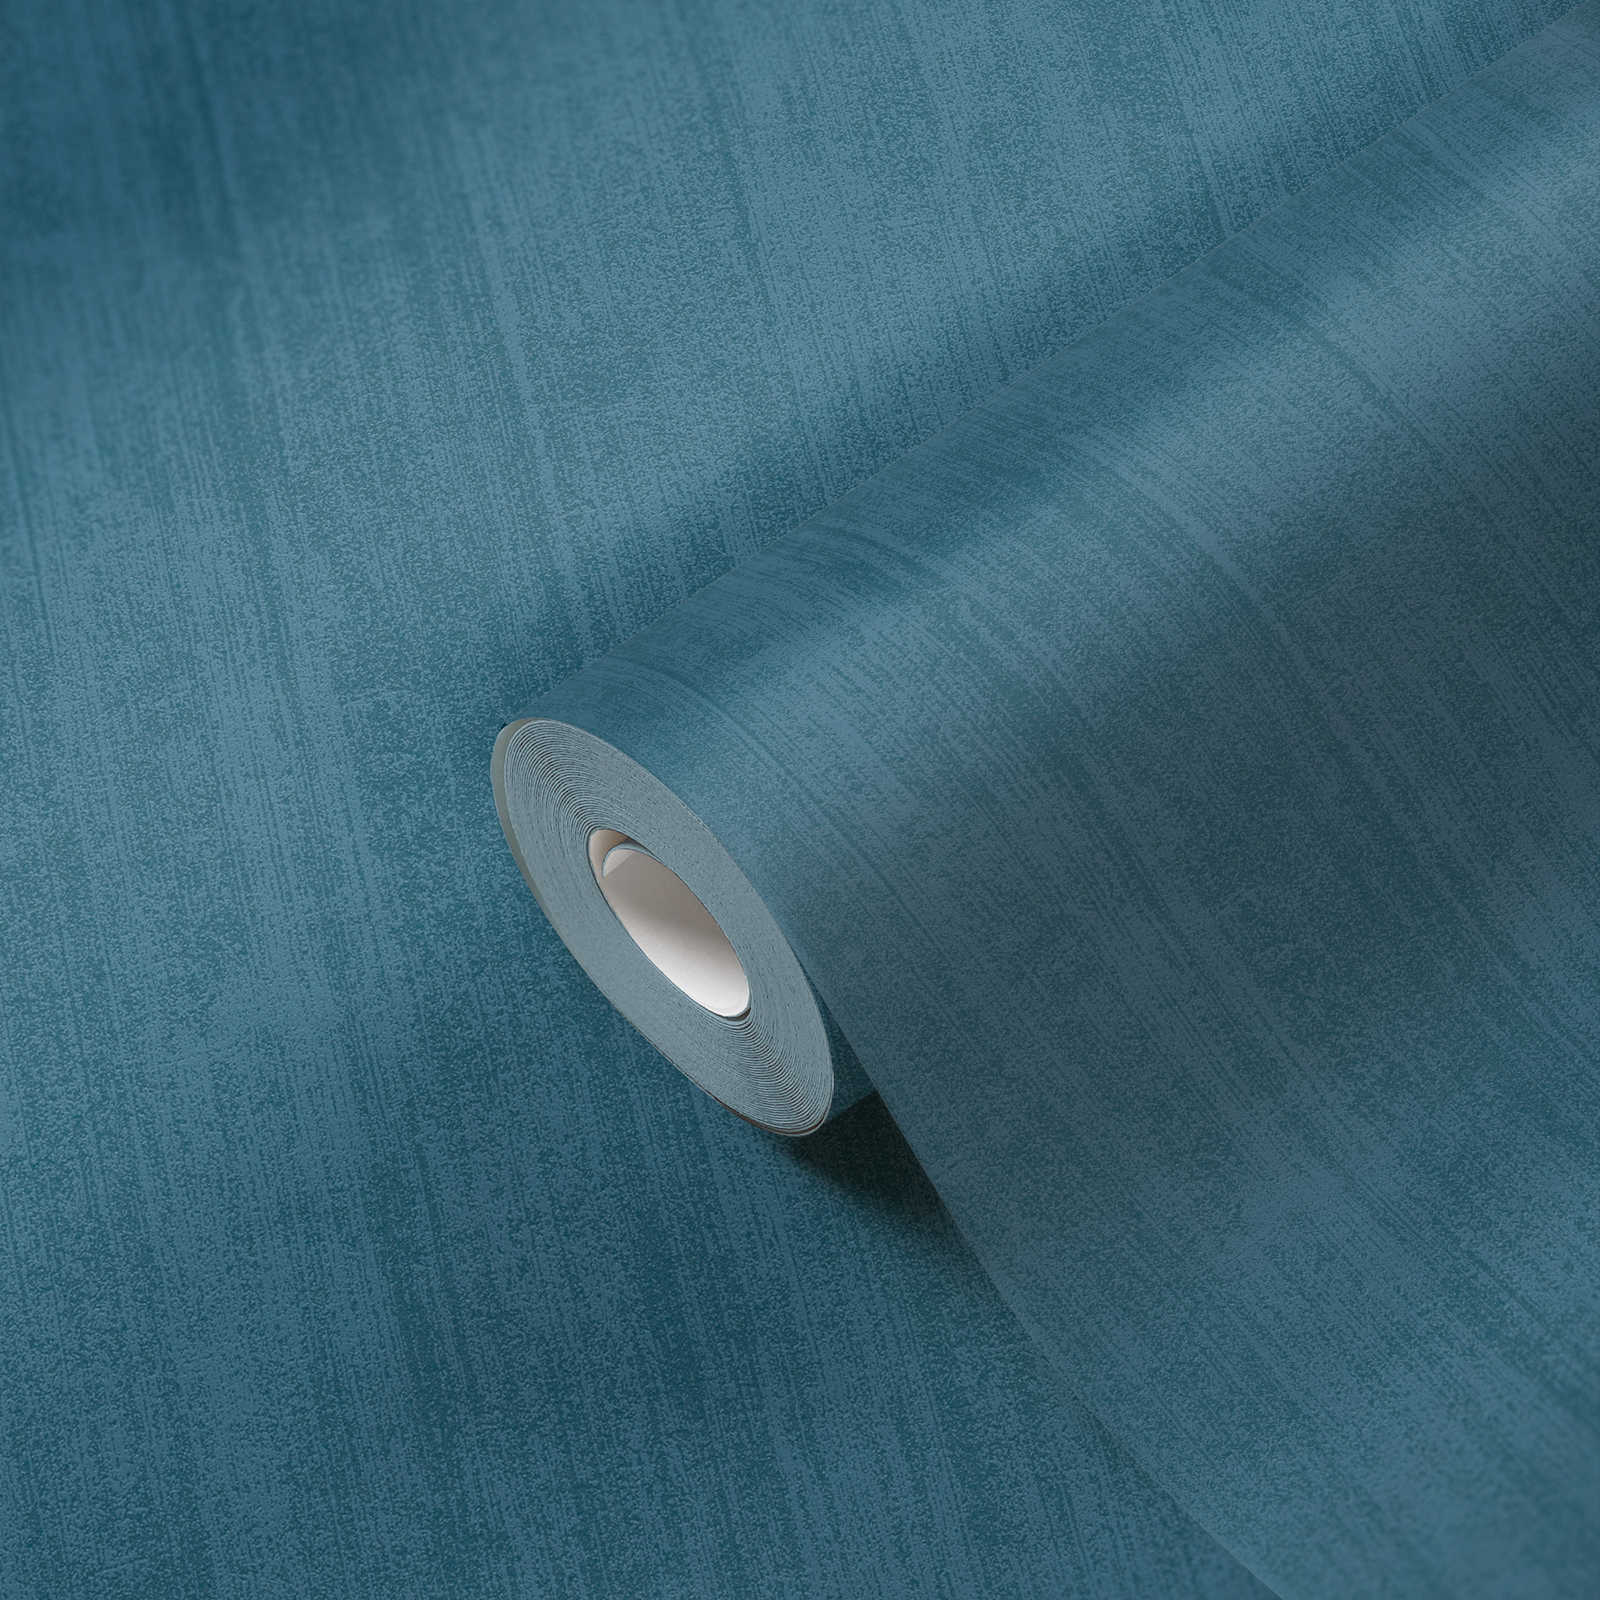             Carta da parati in tessuto non tessuto a tinta unita con tratteggio tono su tono - blu
        